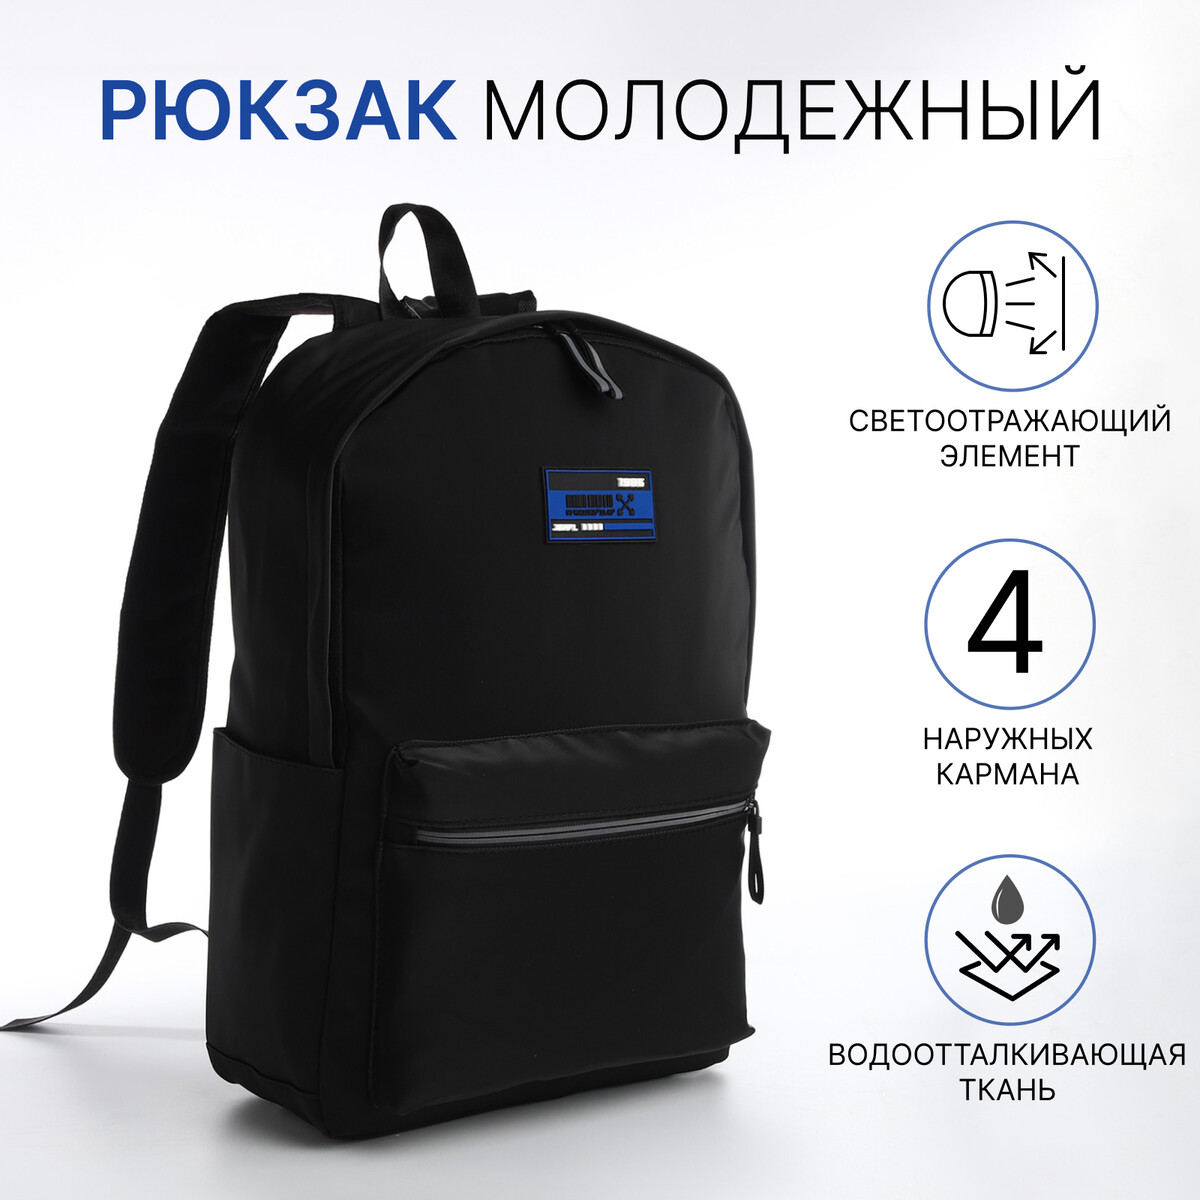 Рюкзак молодежный из текстиля на молнии, 4 кармана, цвет черный/синий молодежный рюкзак grizzly rd 444 2 2 синий